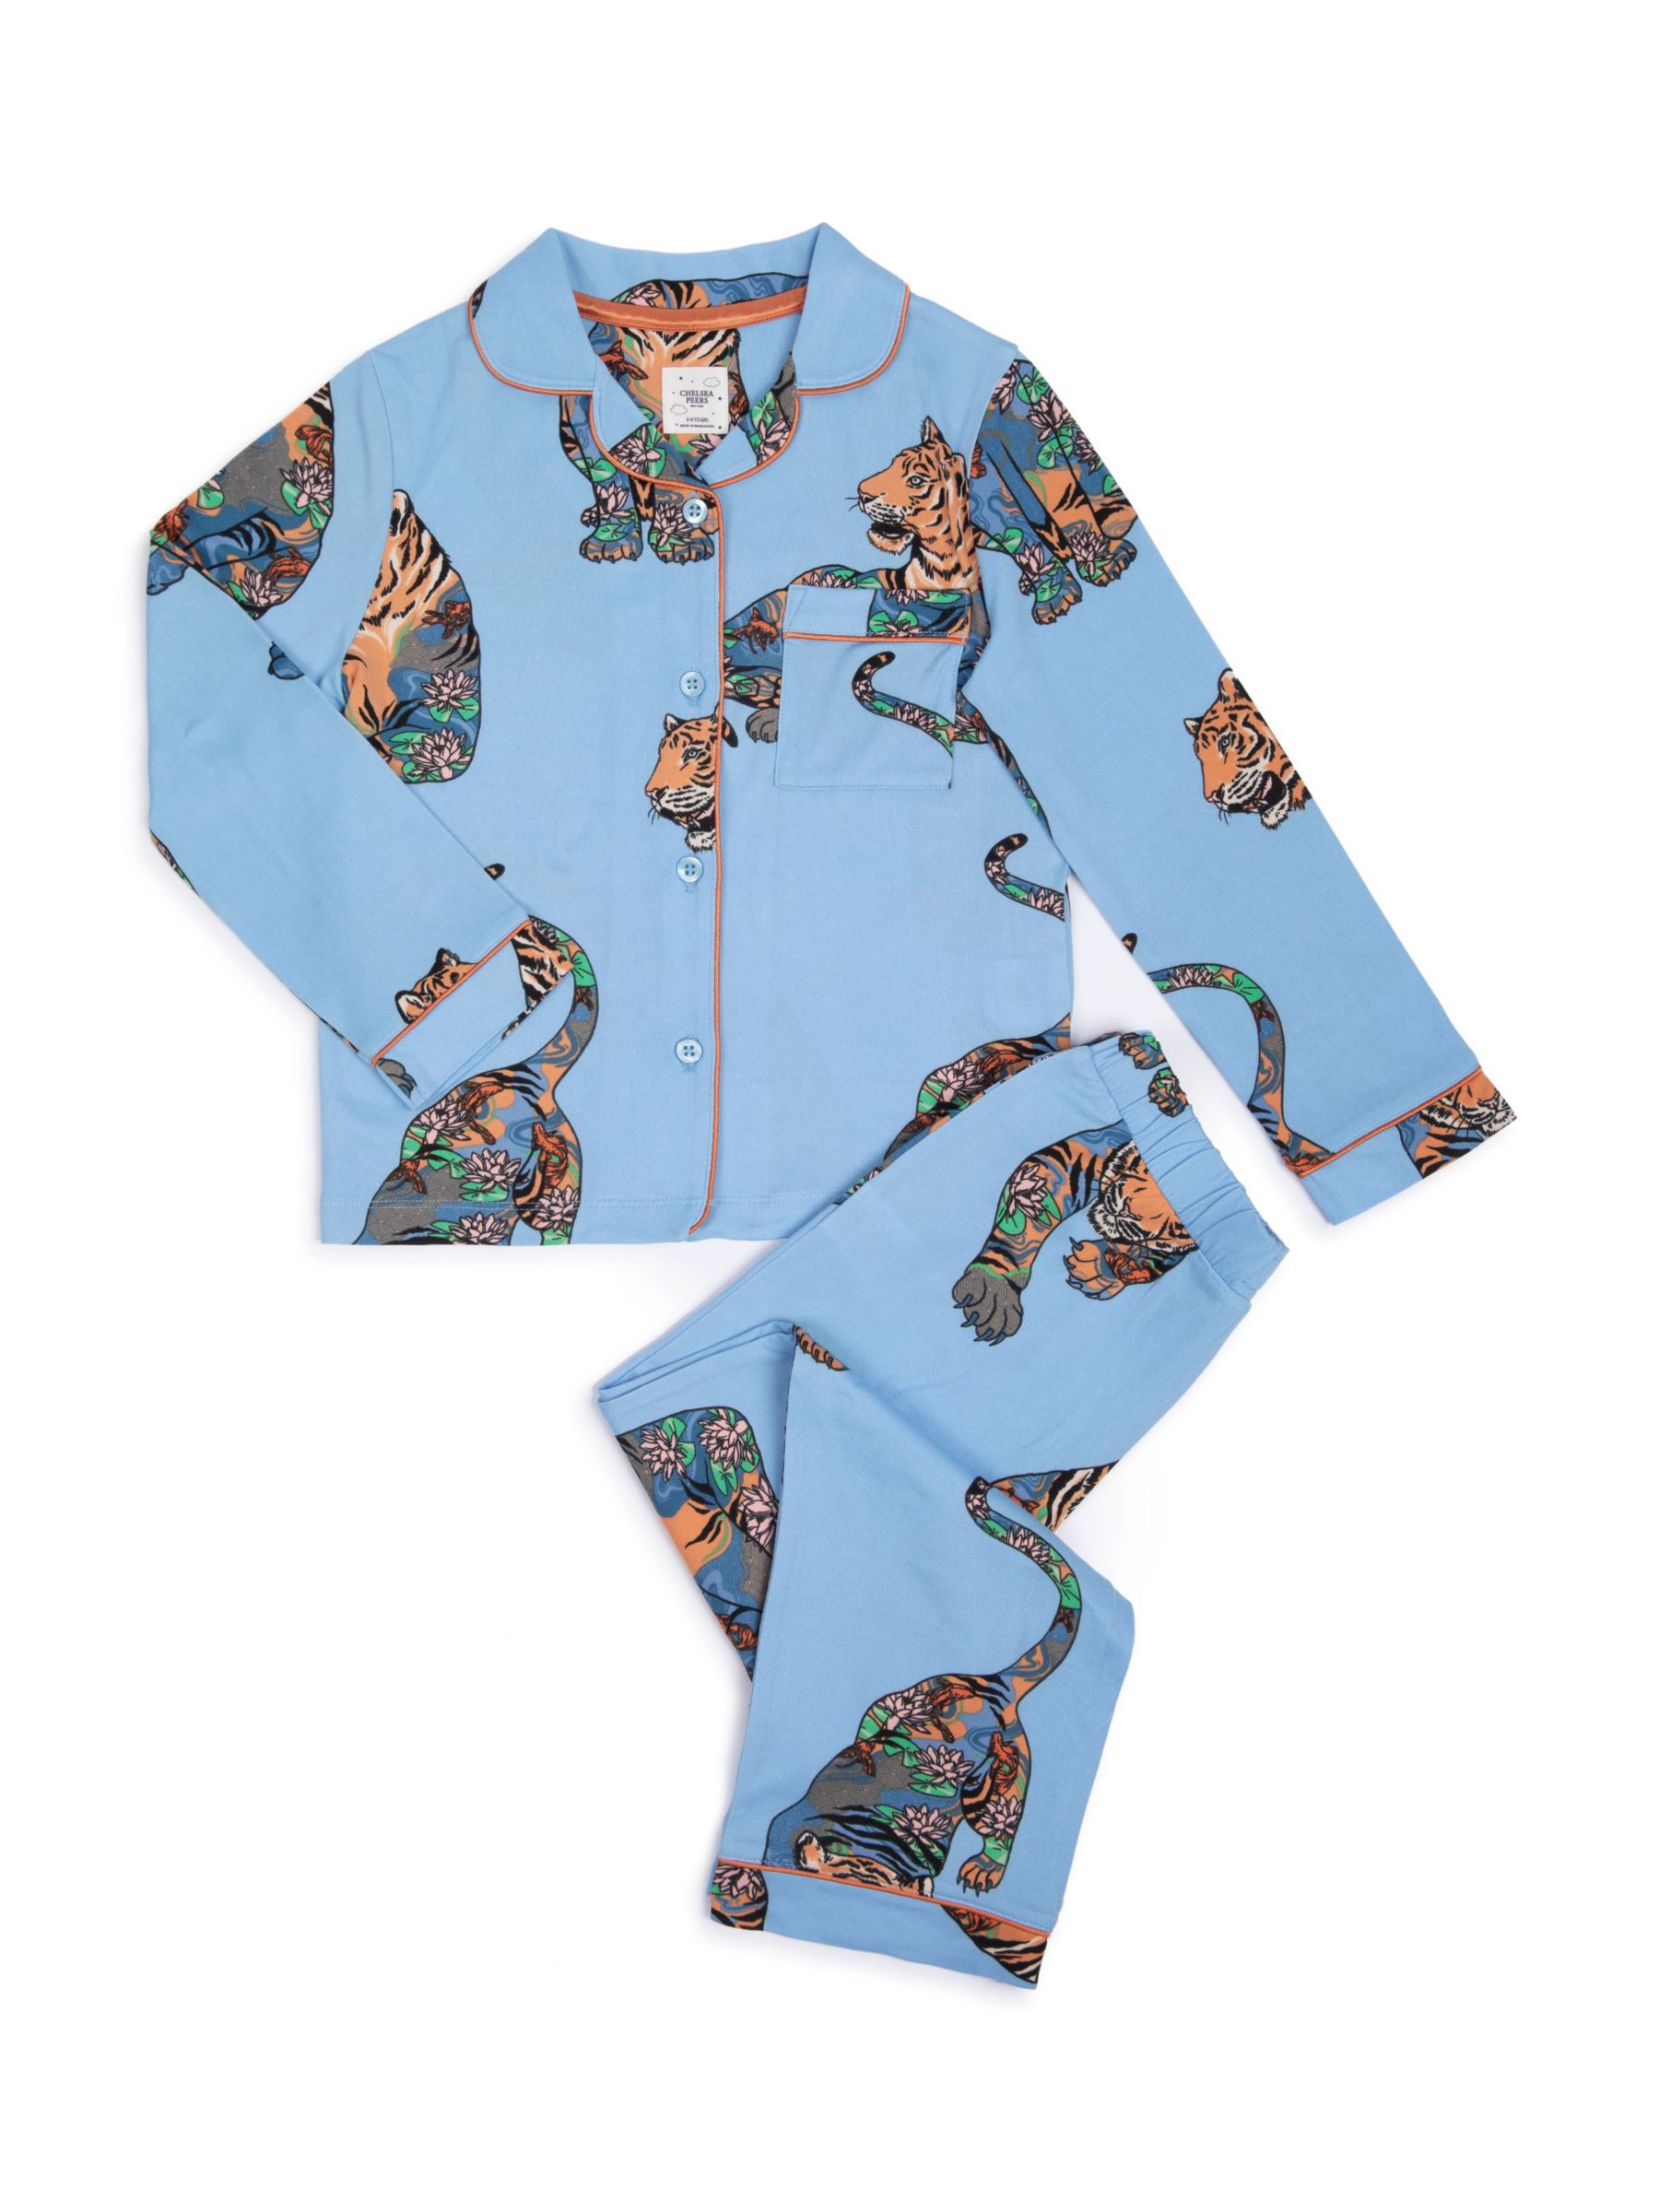 Buy Chelsea Peers Kids' Tiger Print Long Pyjama Set, Blue/Multi Online at johnlewis.com